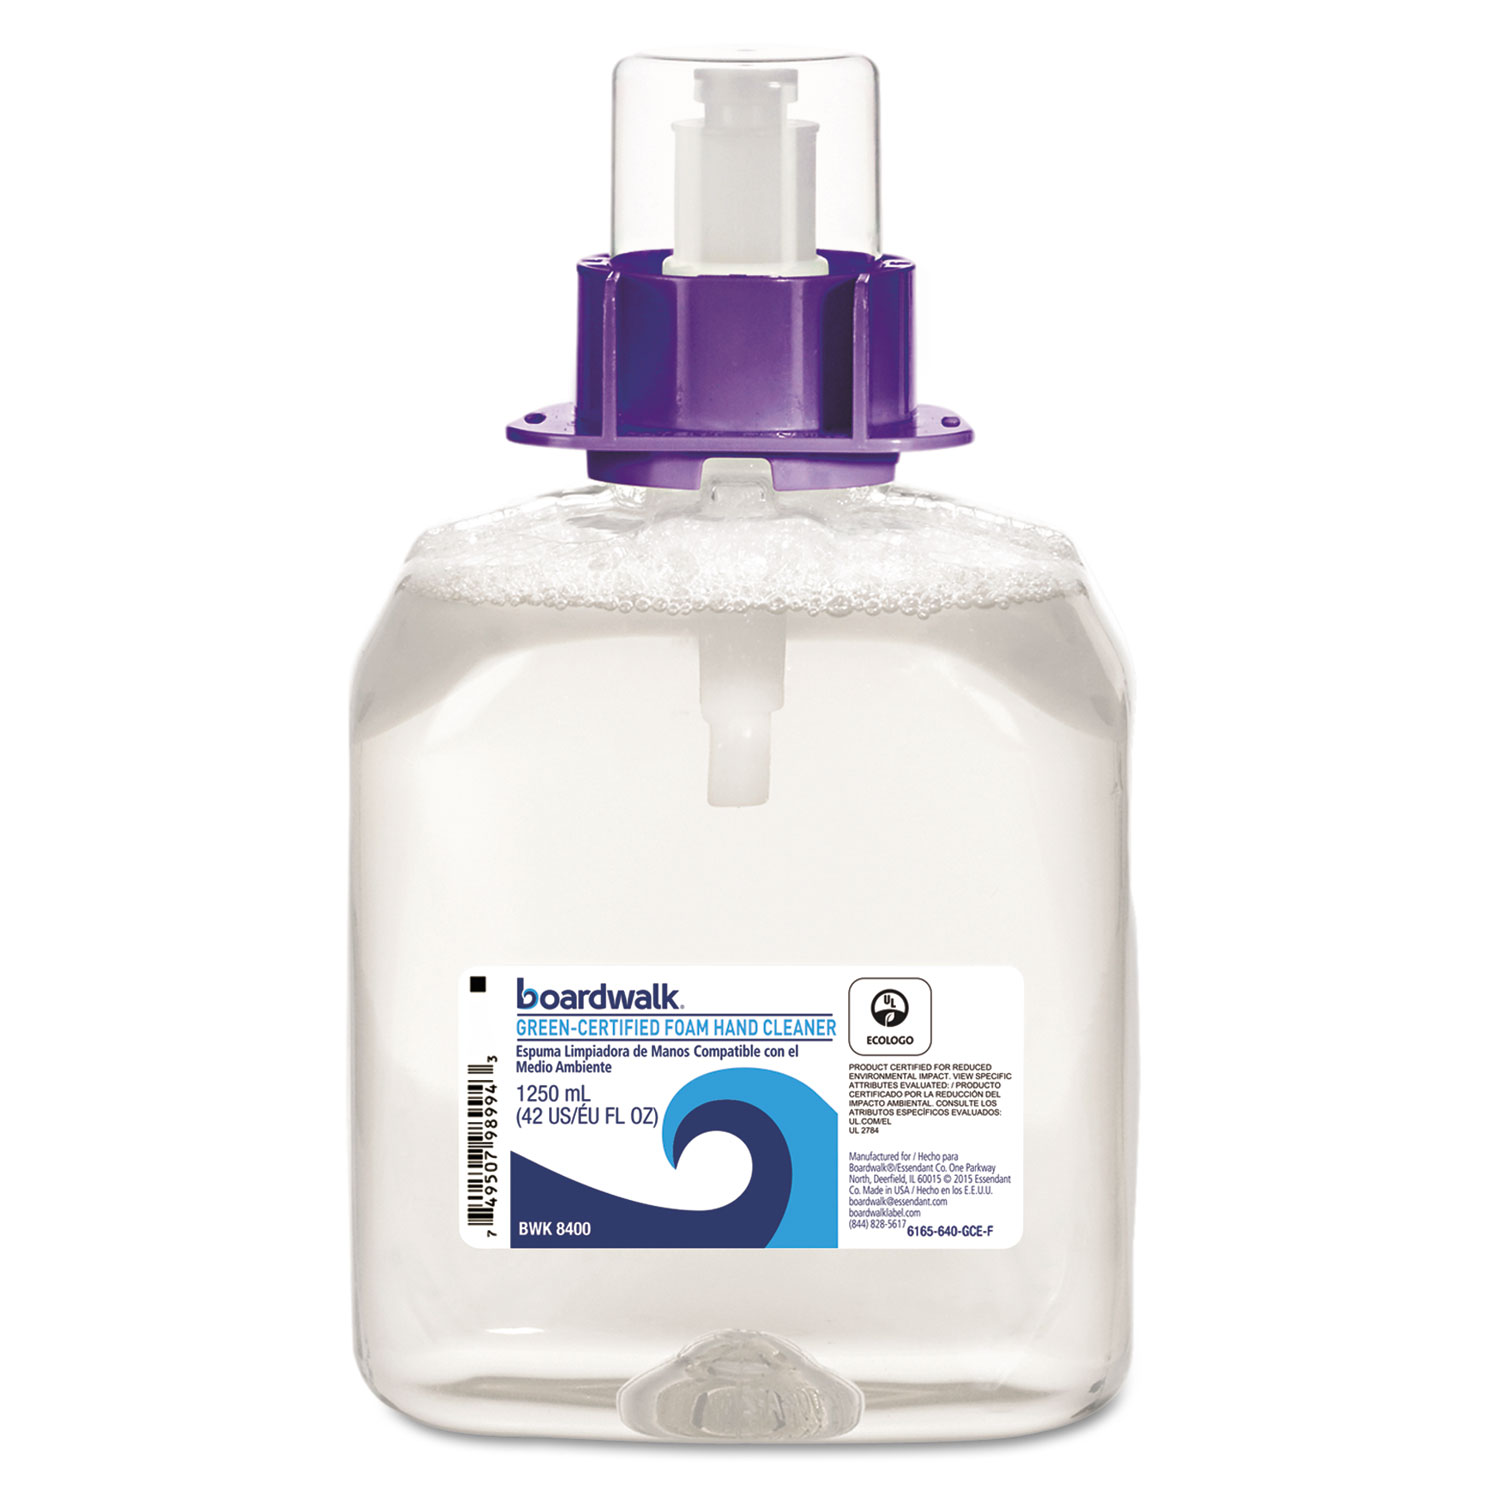  Boardwalk 6165-04-GCE00VL Green Certified Foam Soap, Fragrance Free, 1250 mL Refill, 4/Carton (BWK8400) 